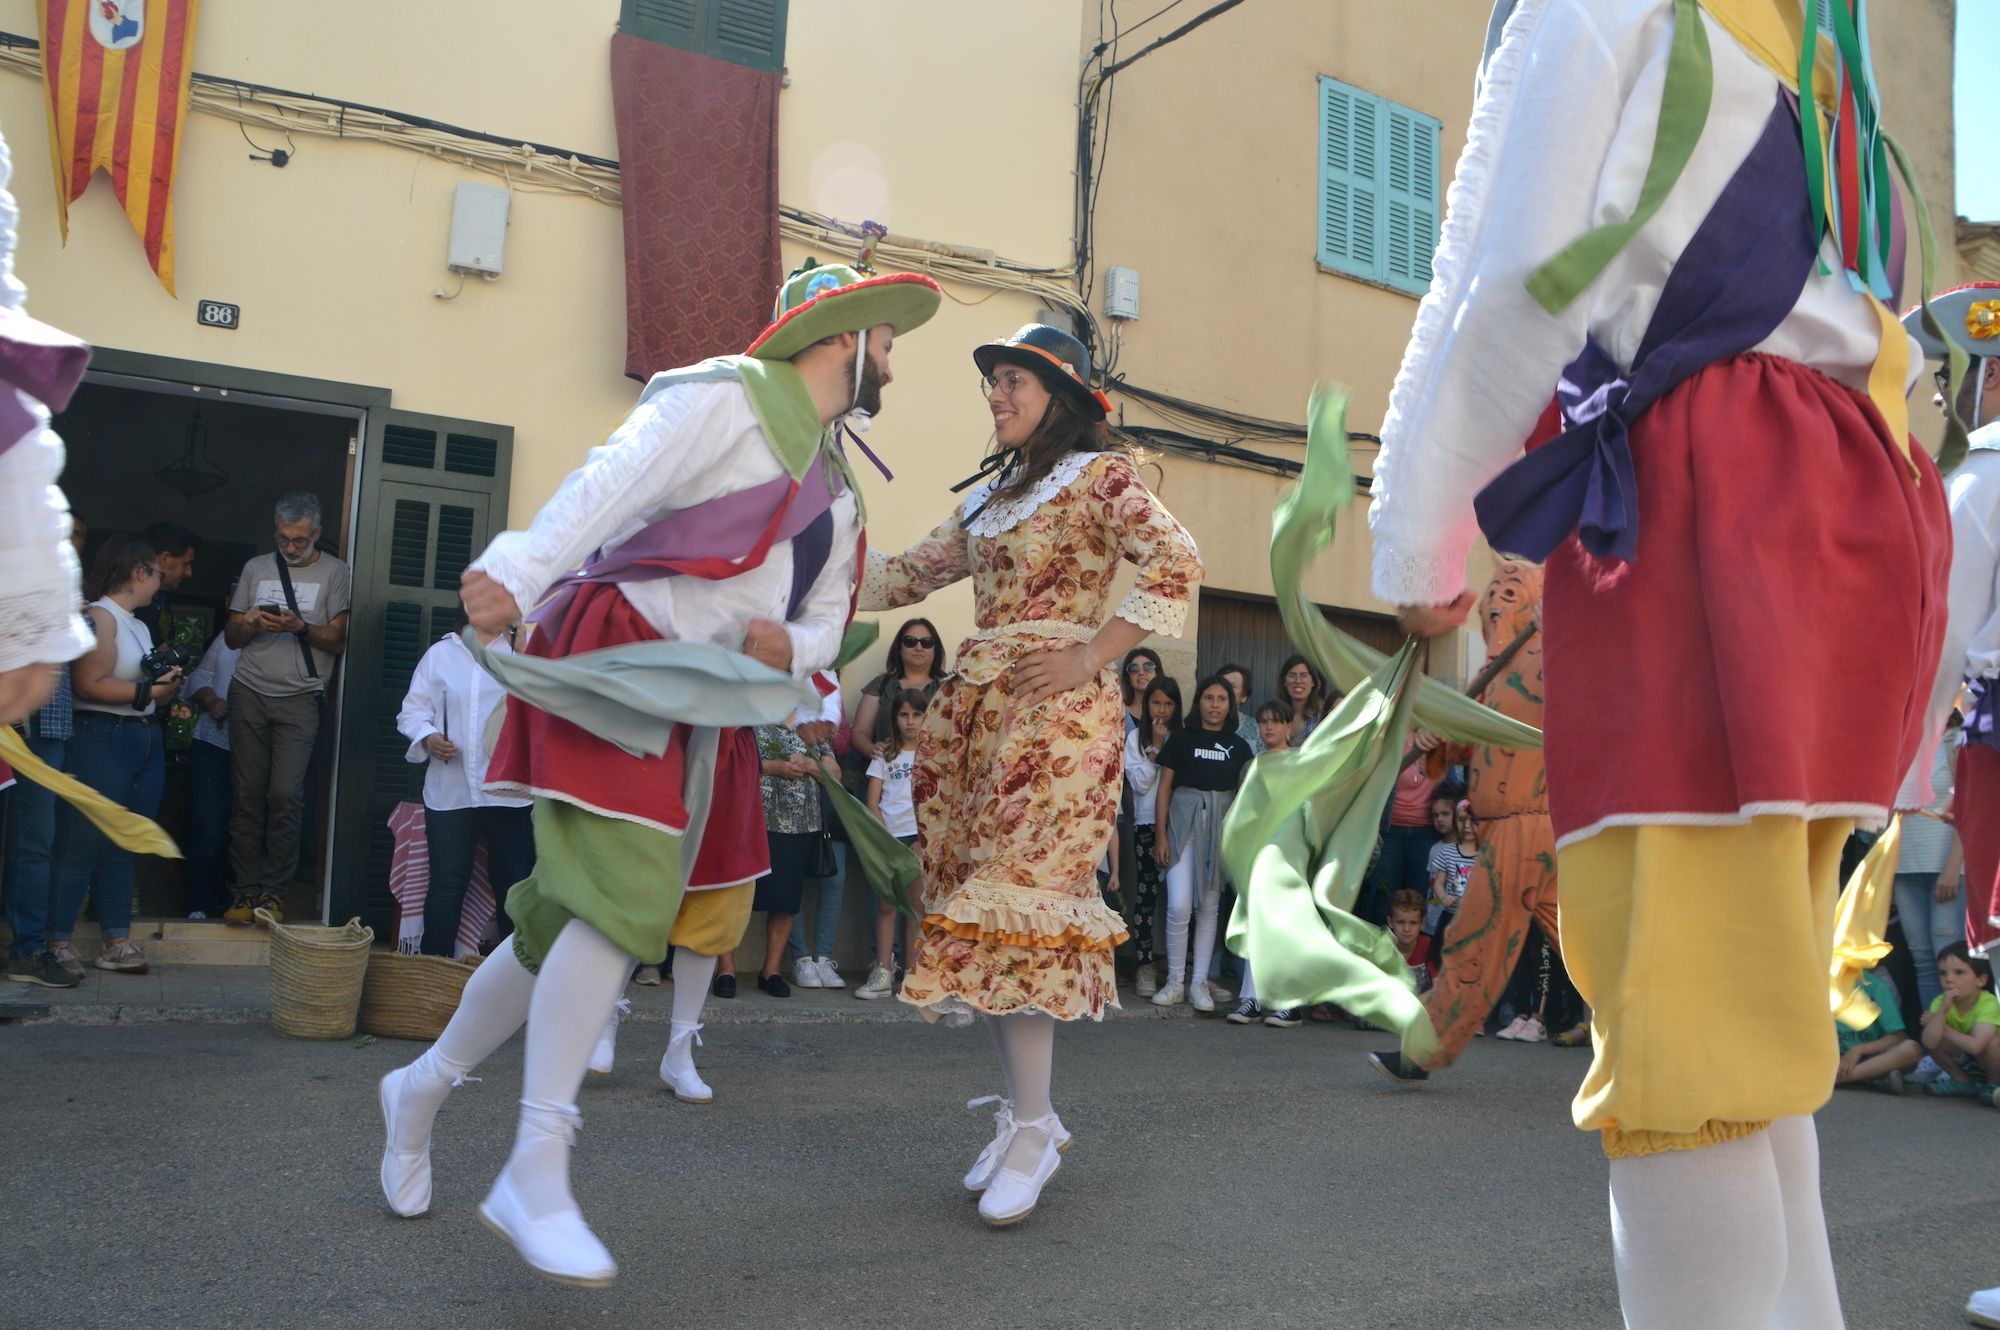 Las danzas ancestrales de los Cossiers de Manacor inician las Fires i Festes de este año